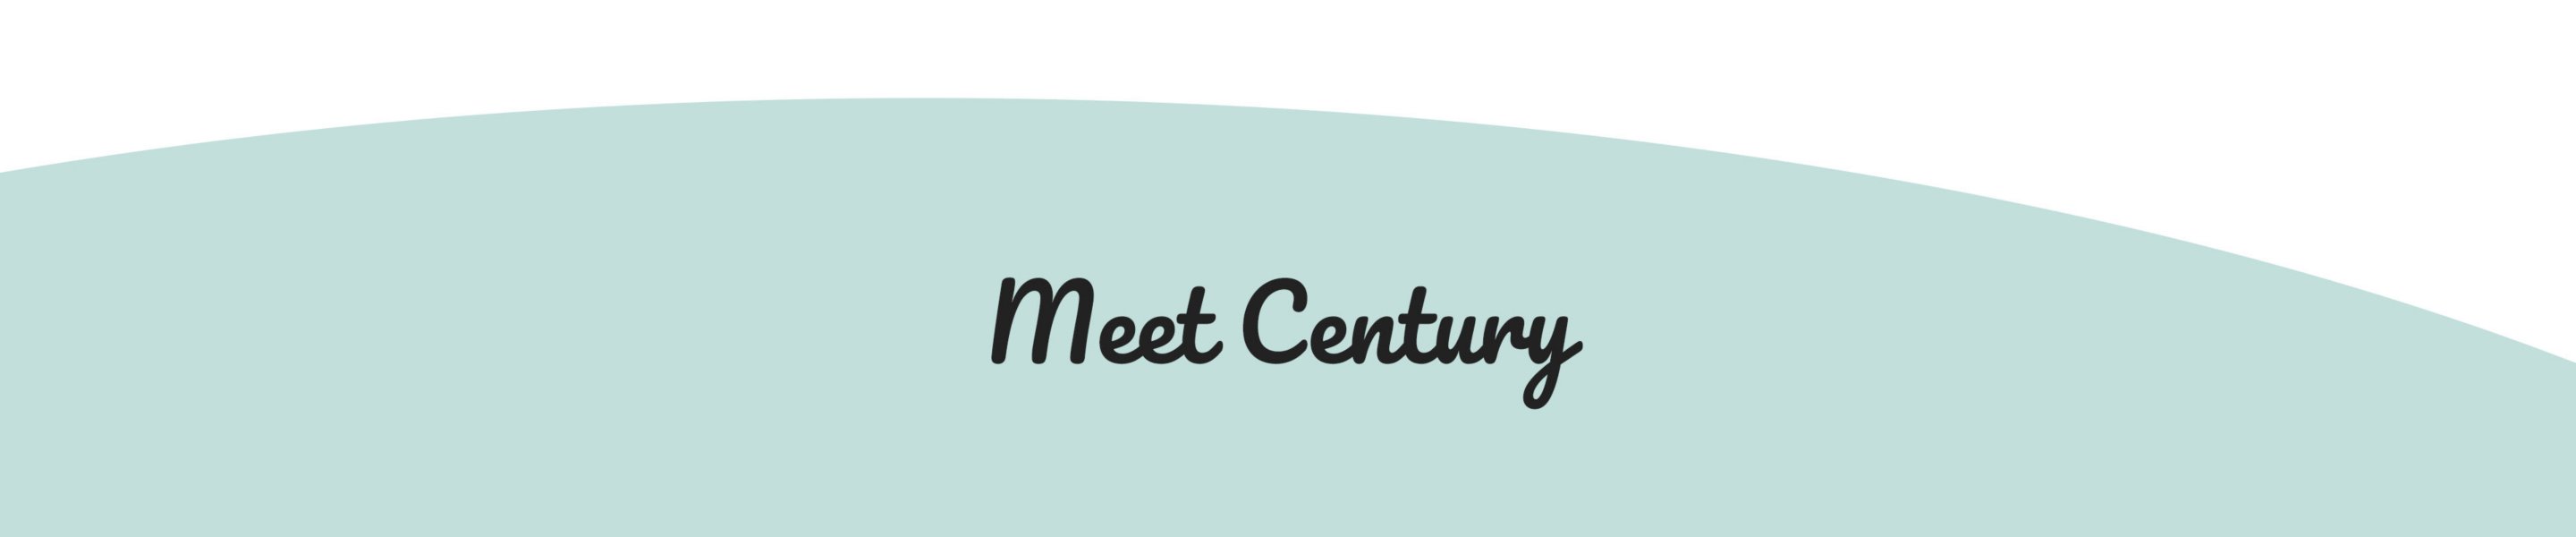 meet century